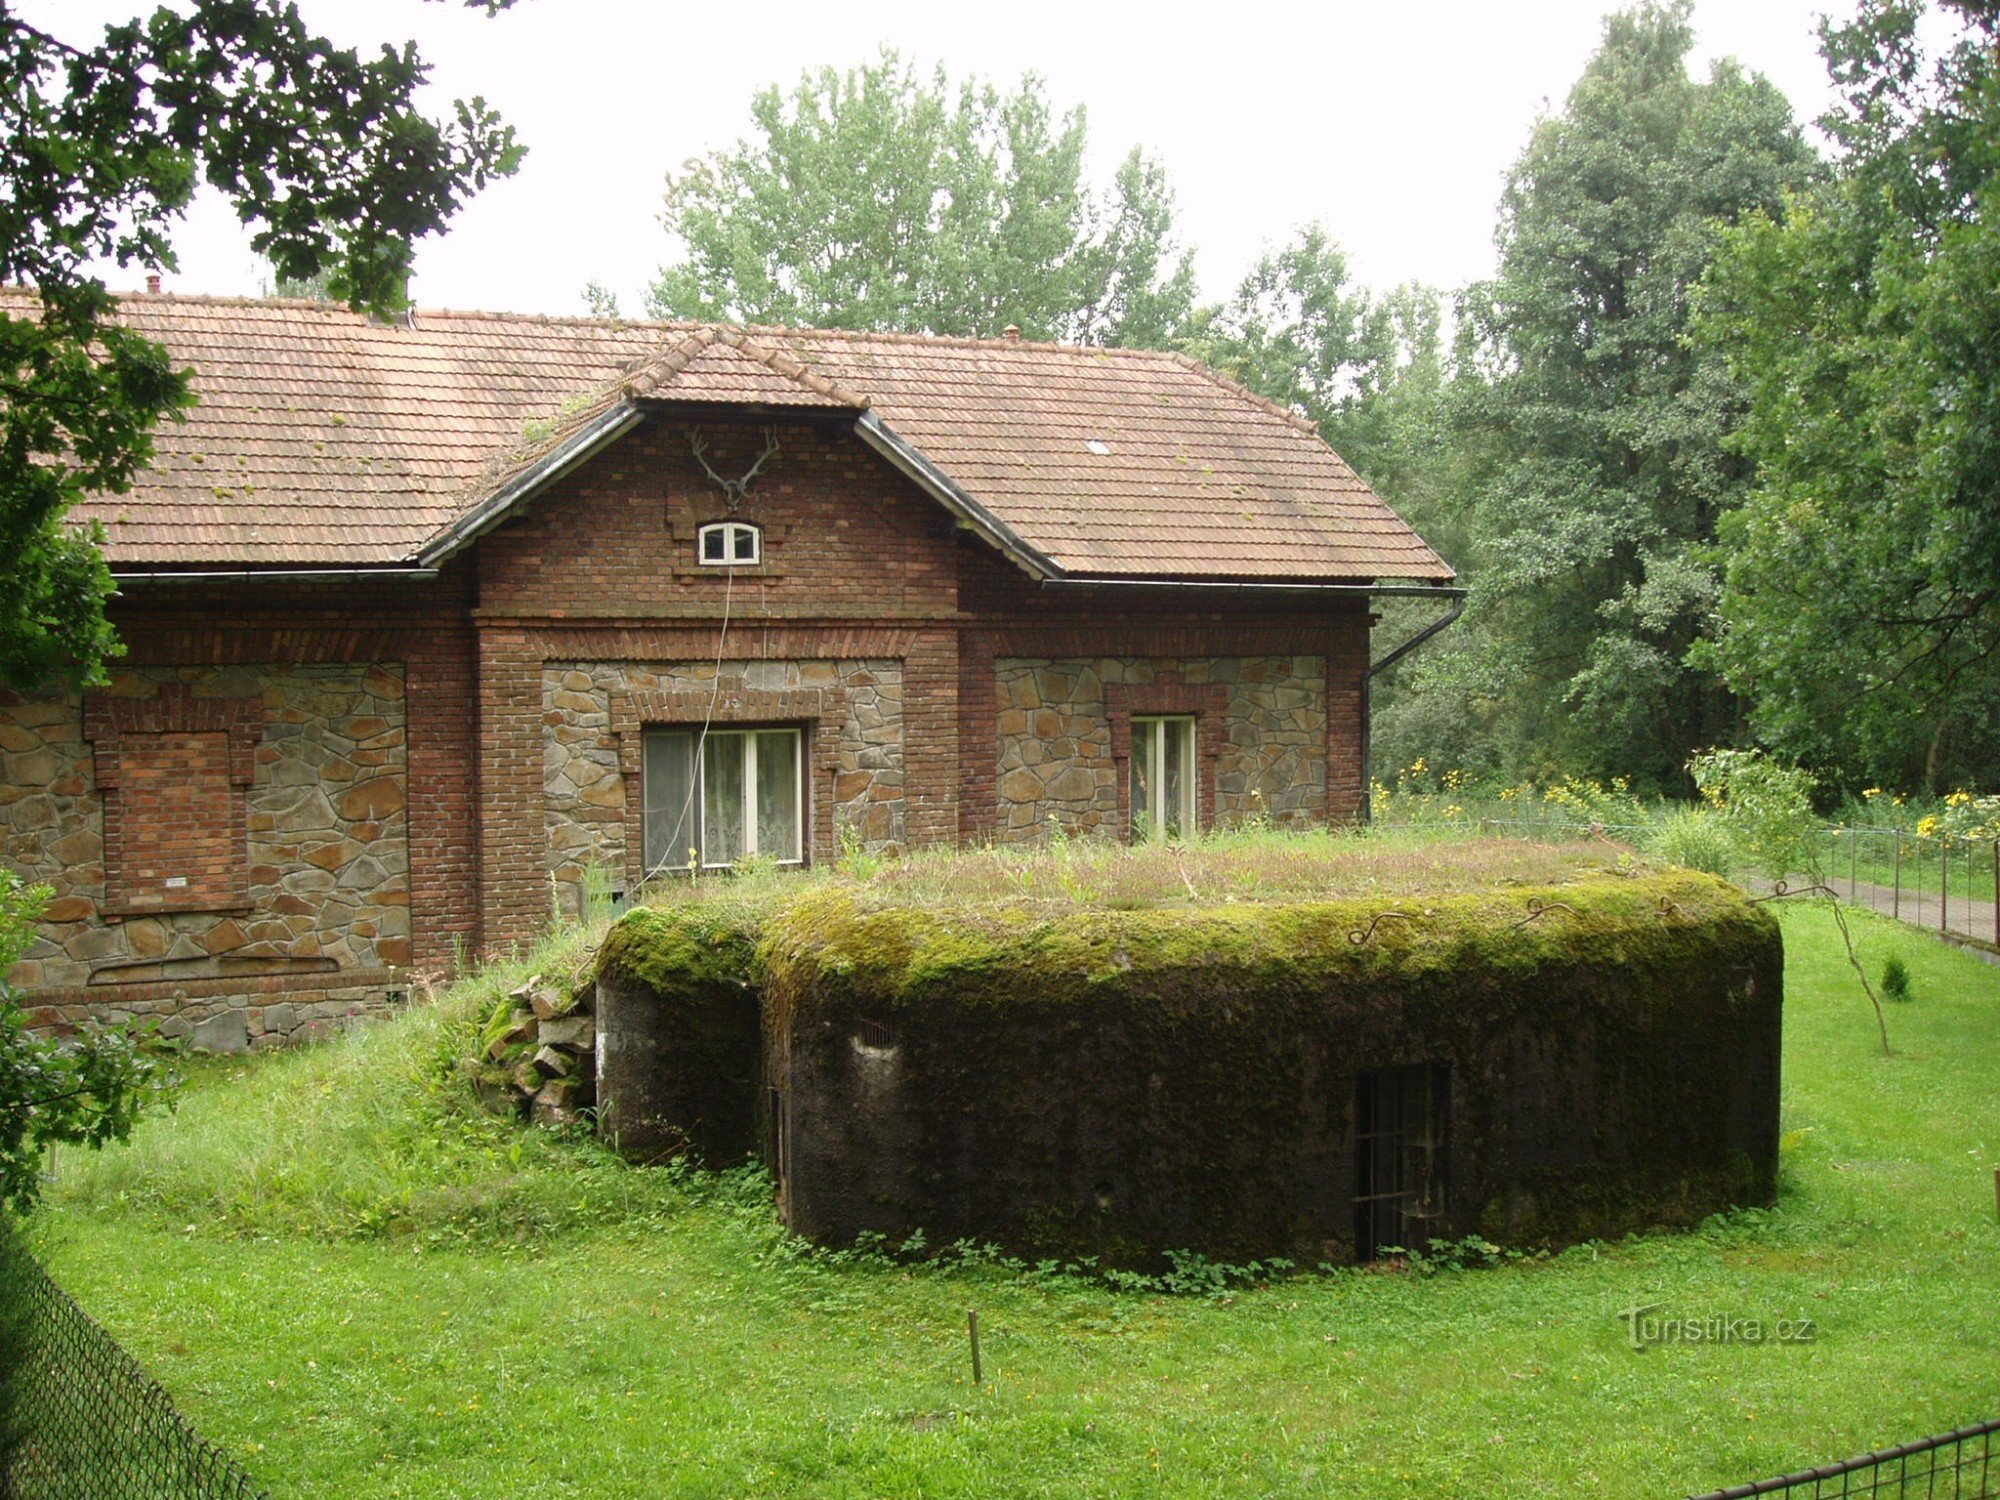 Fortificação leve "ŘOPÍK" no jardim da reserva de caça na localidade de Purkrabí perto de Chlum perto de Třeboň